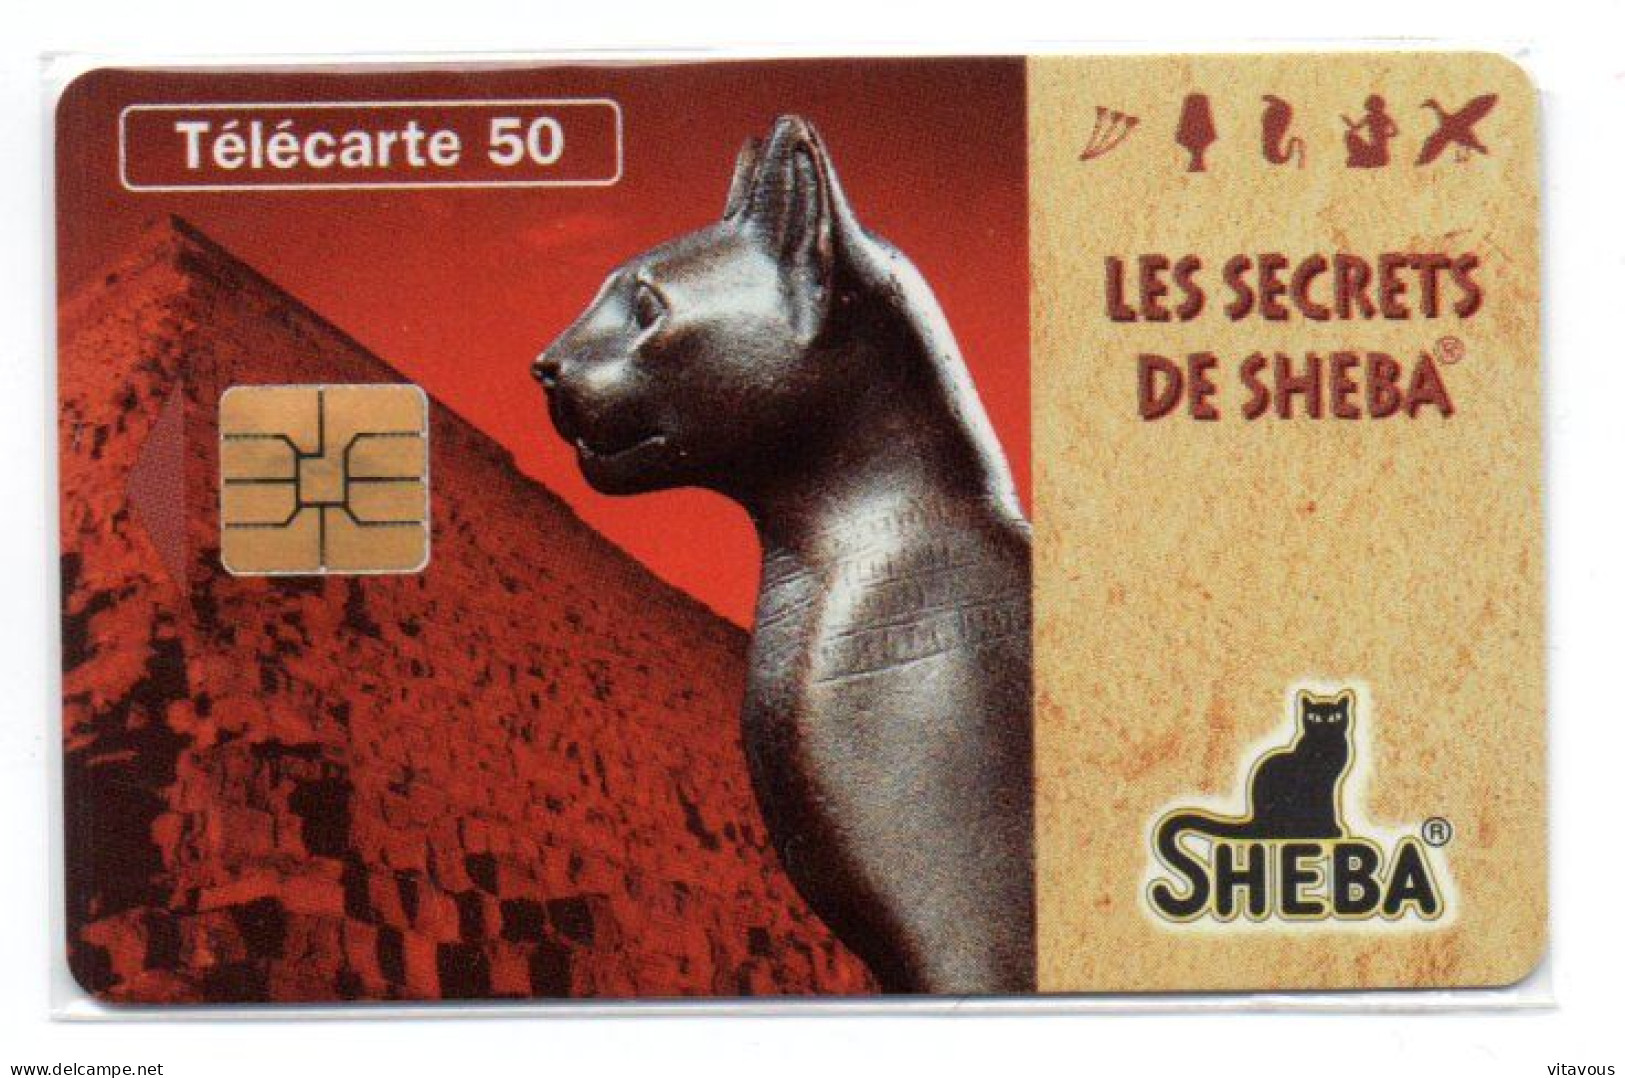 En 1585 SHEBA Déesse Bastet  Chat Cat Télécarte FRANCE 50 Unités Phonecard  (F 426) - 50 Units